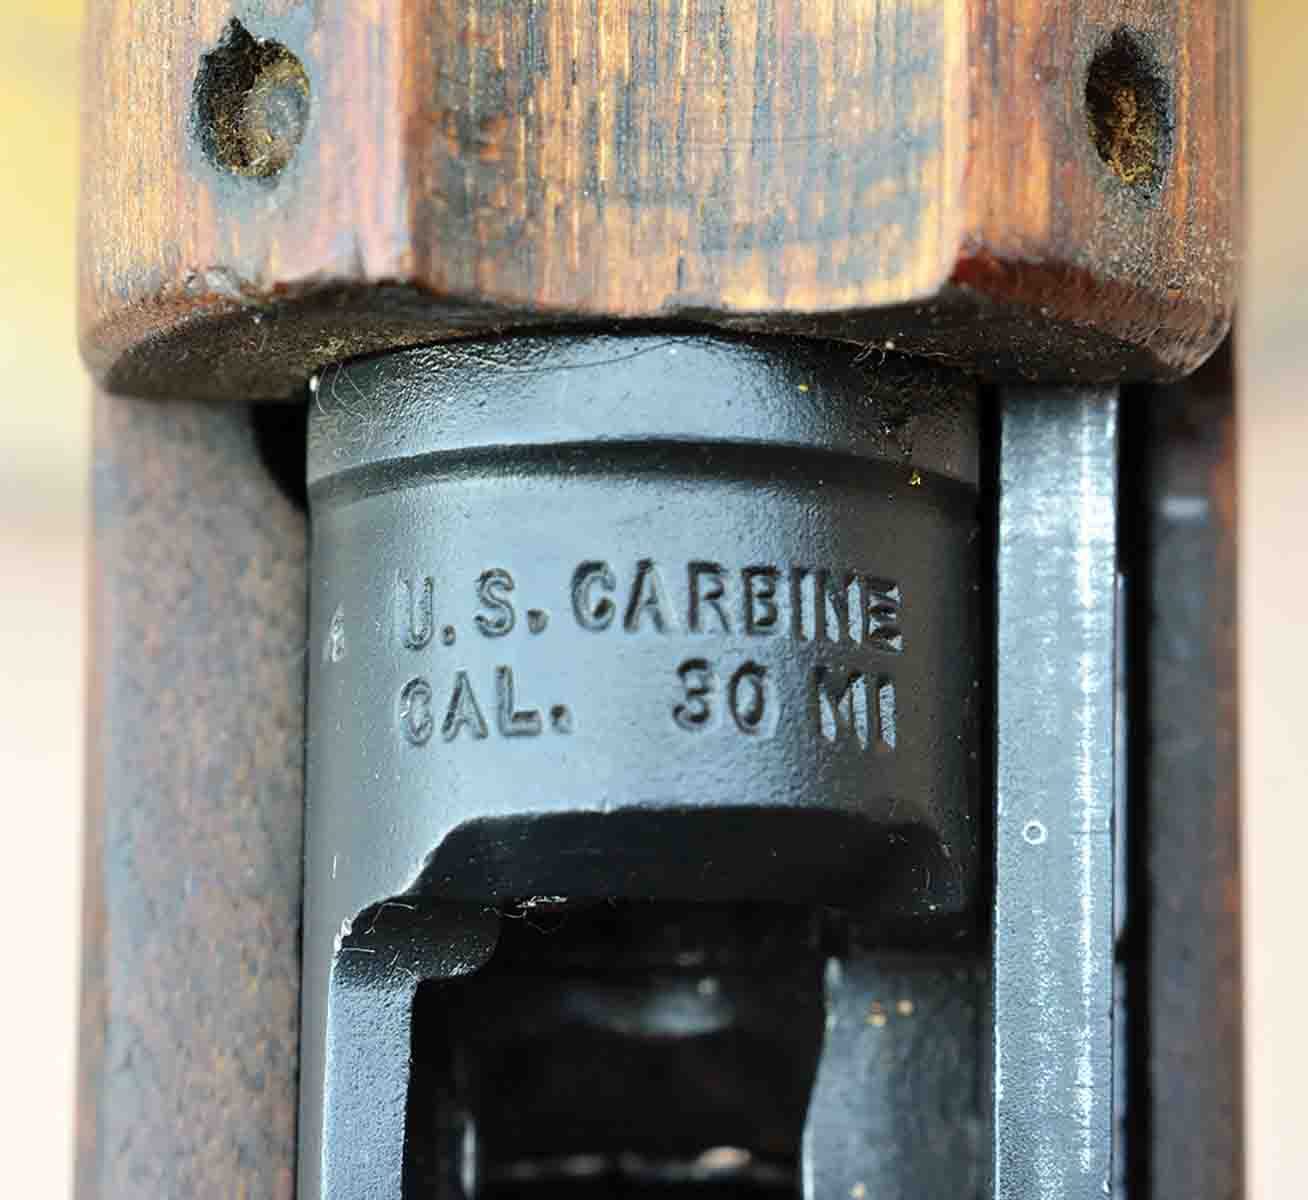 “U.S. CARBINE CAL. 30 M1” receiver marking.